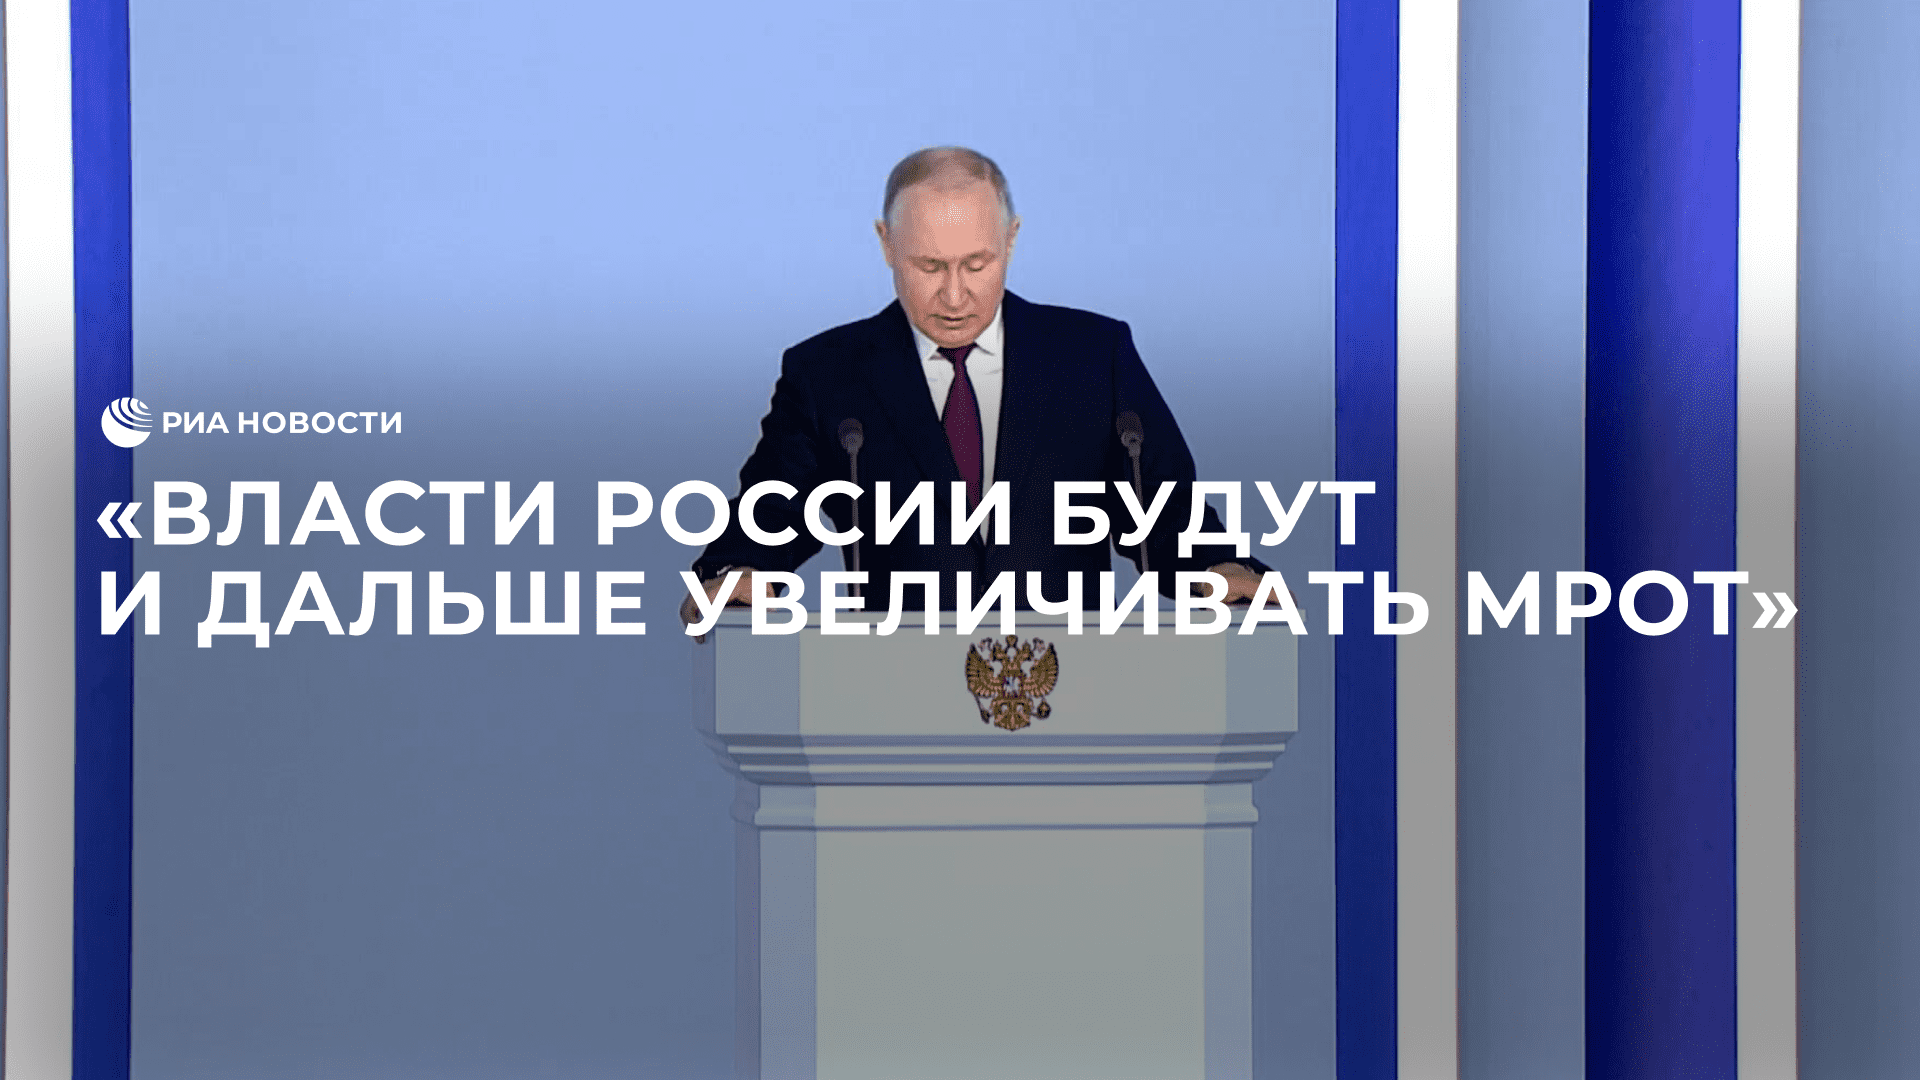 Путин пообещал, что власти будут и дальше увеличивать МРОТ